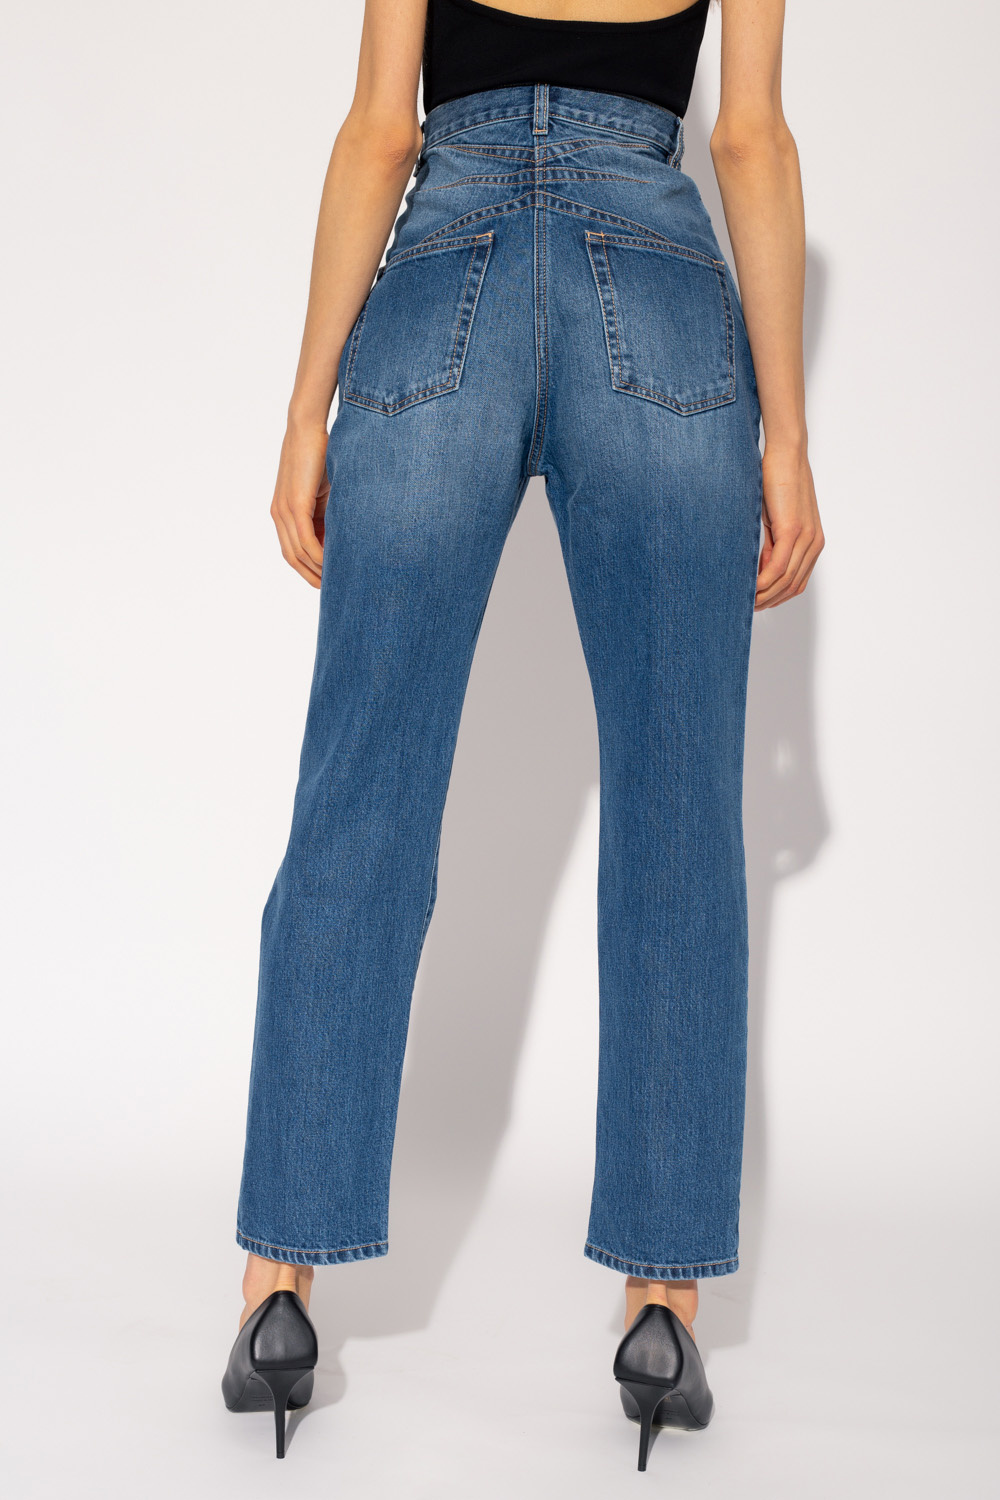 Alaïa High-waisted jeans